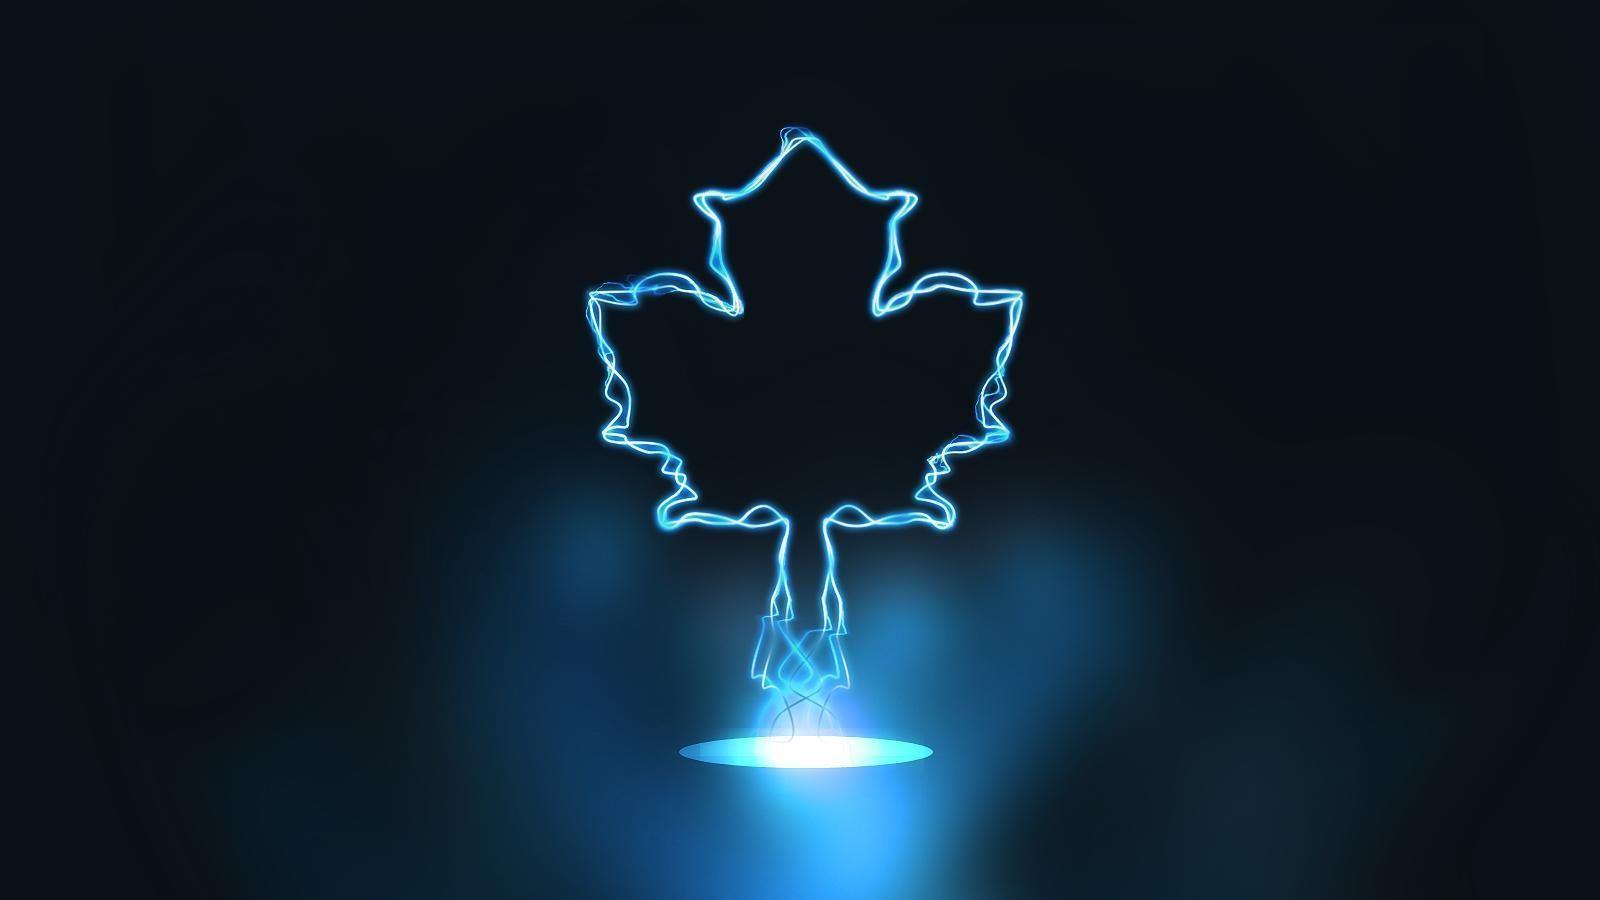 Enjoy this new Toronto Maple Leafs desktop background. Toronto